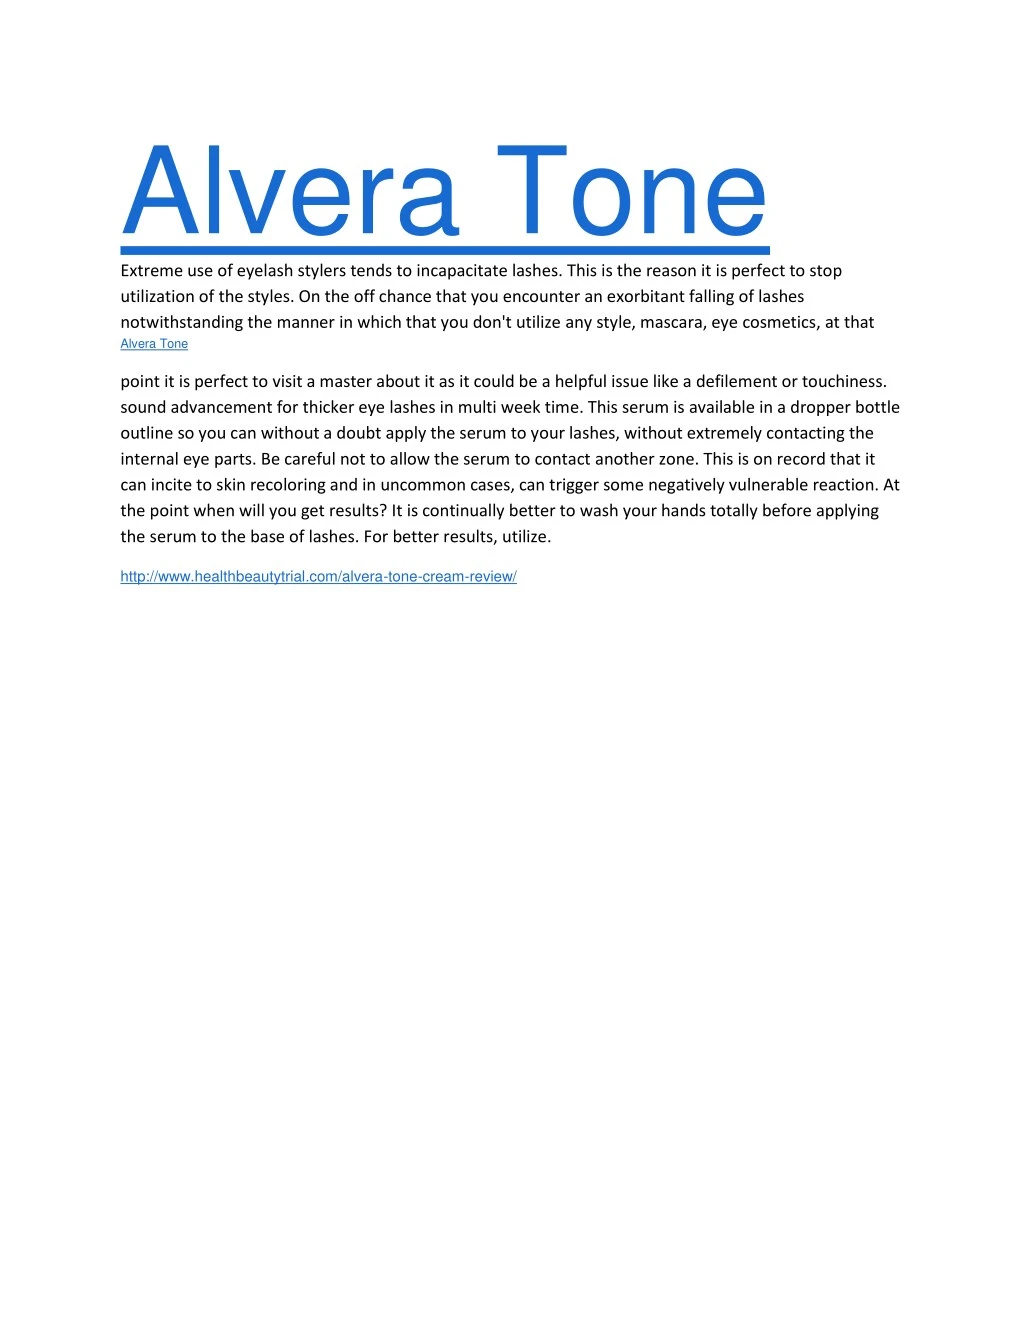 alvera tone extreme use of eyelash stylers tends